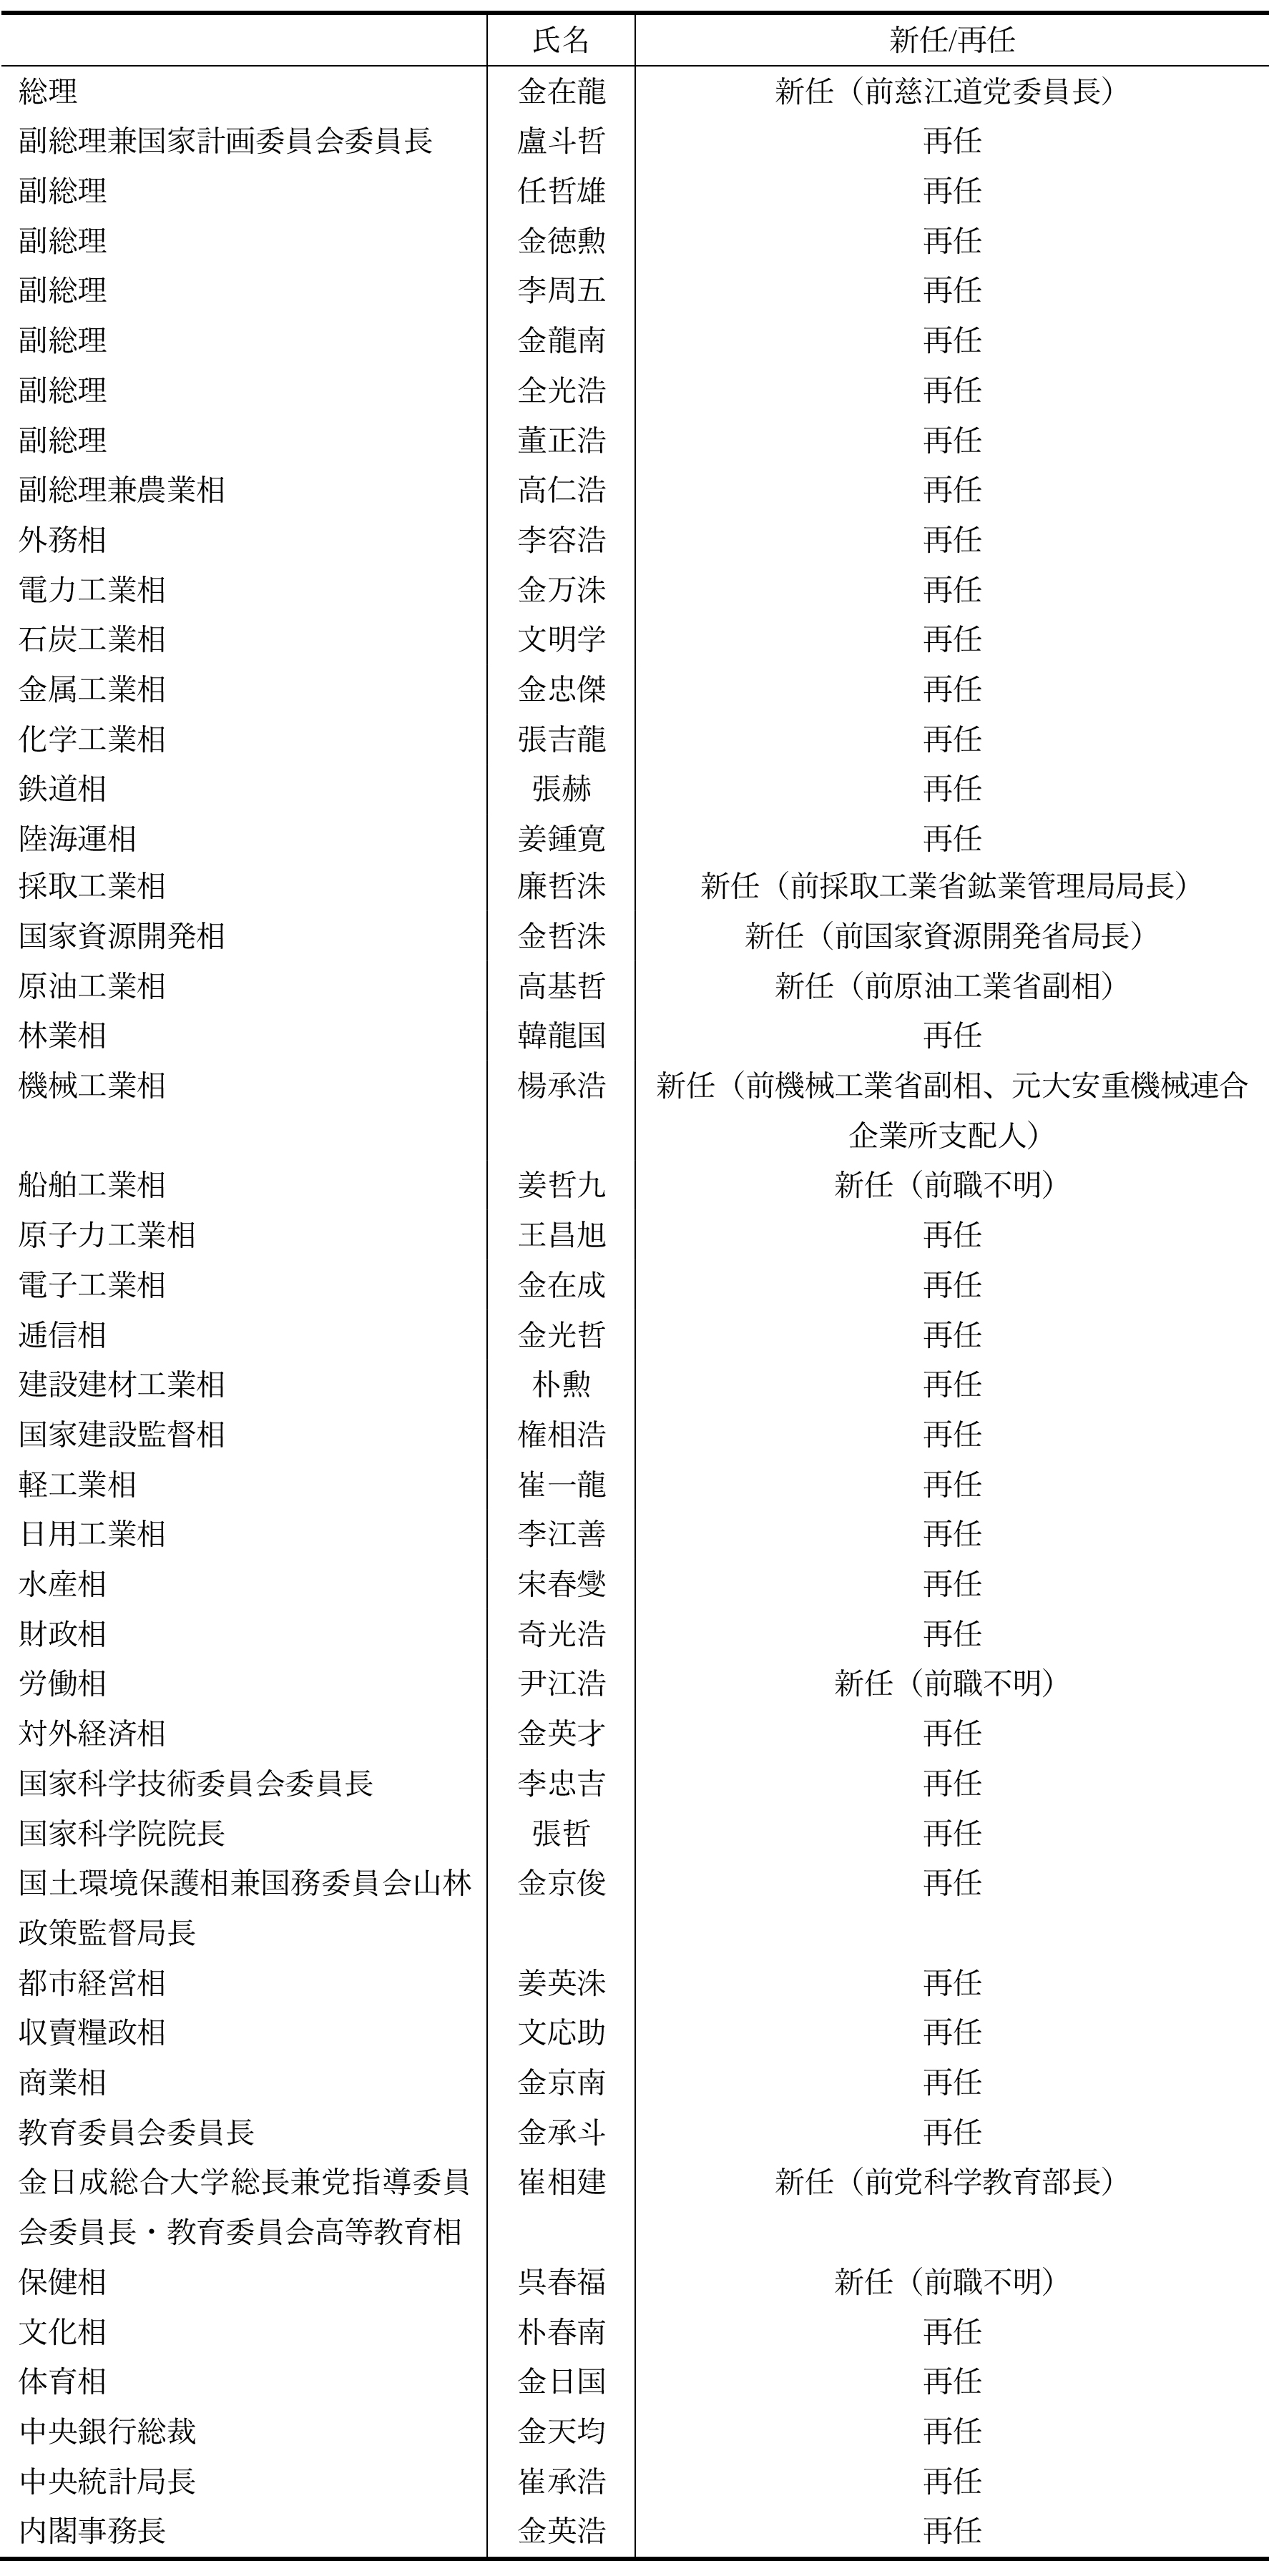 表7 内閣メンバー名簿（2019年4月11日）